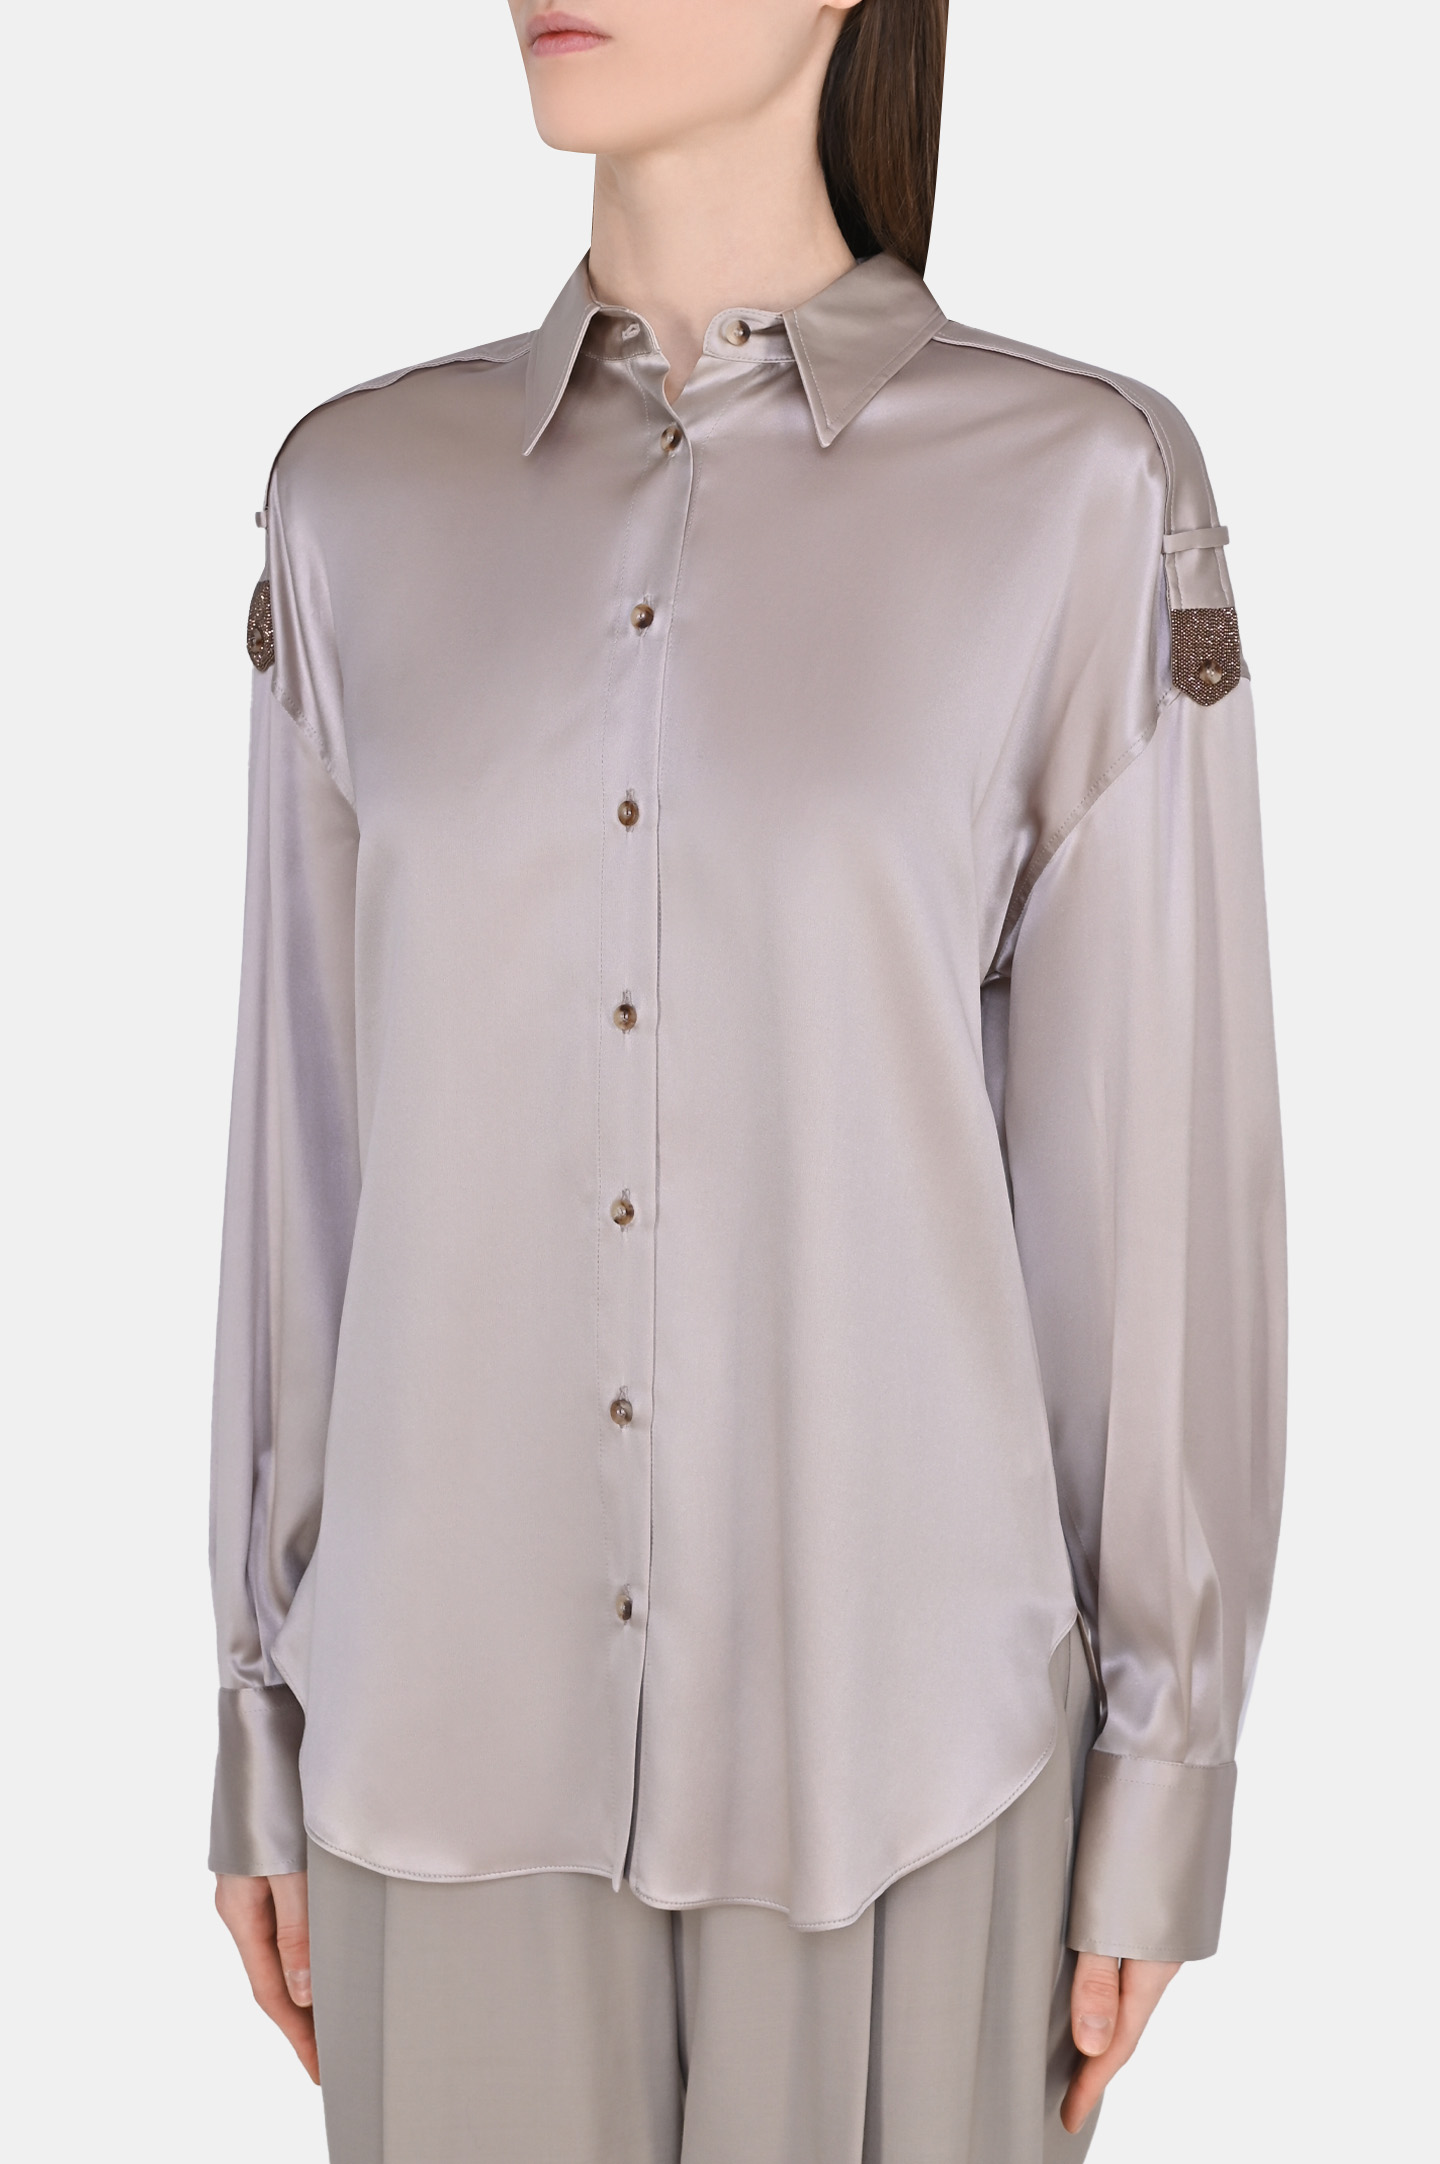 Блуза BRUNELLO  CUCINELLI MPC59RH126, цвет: Бежевый, Женский